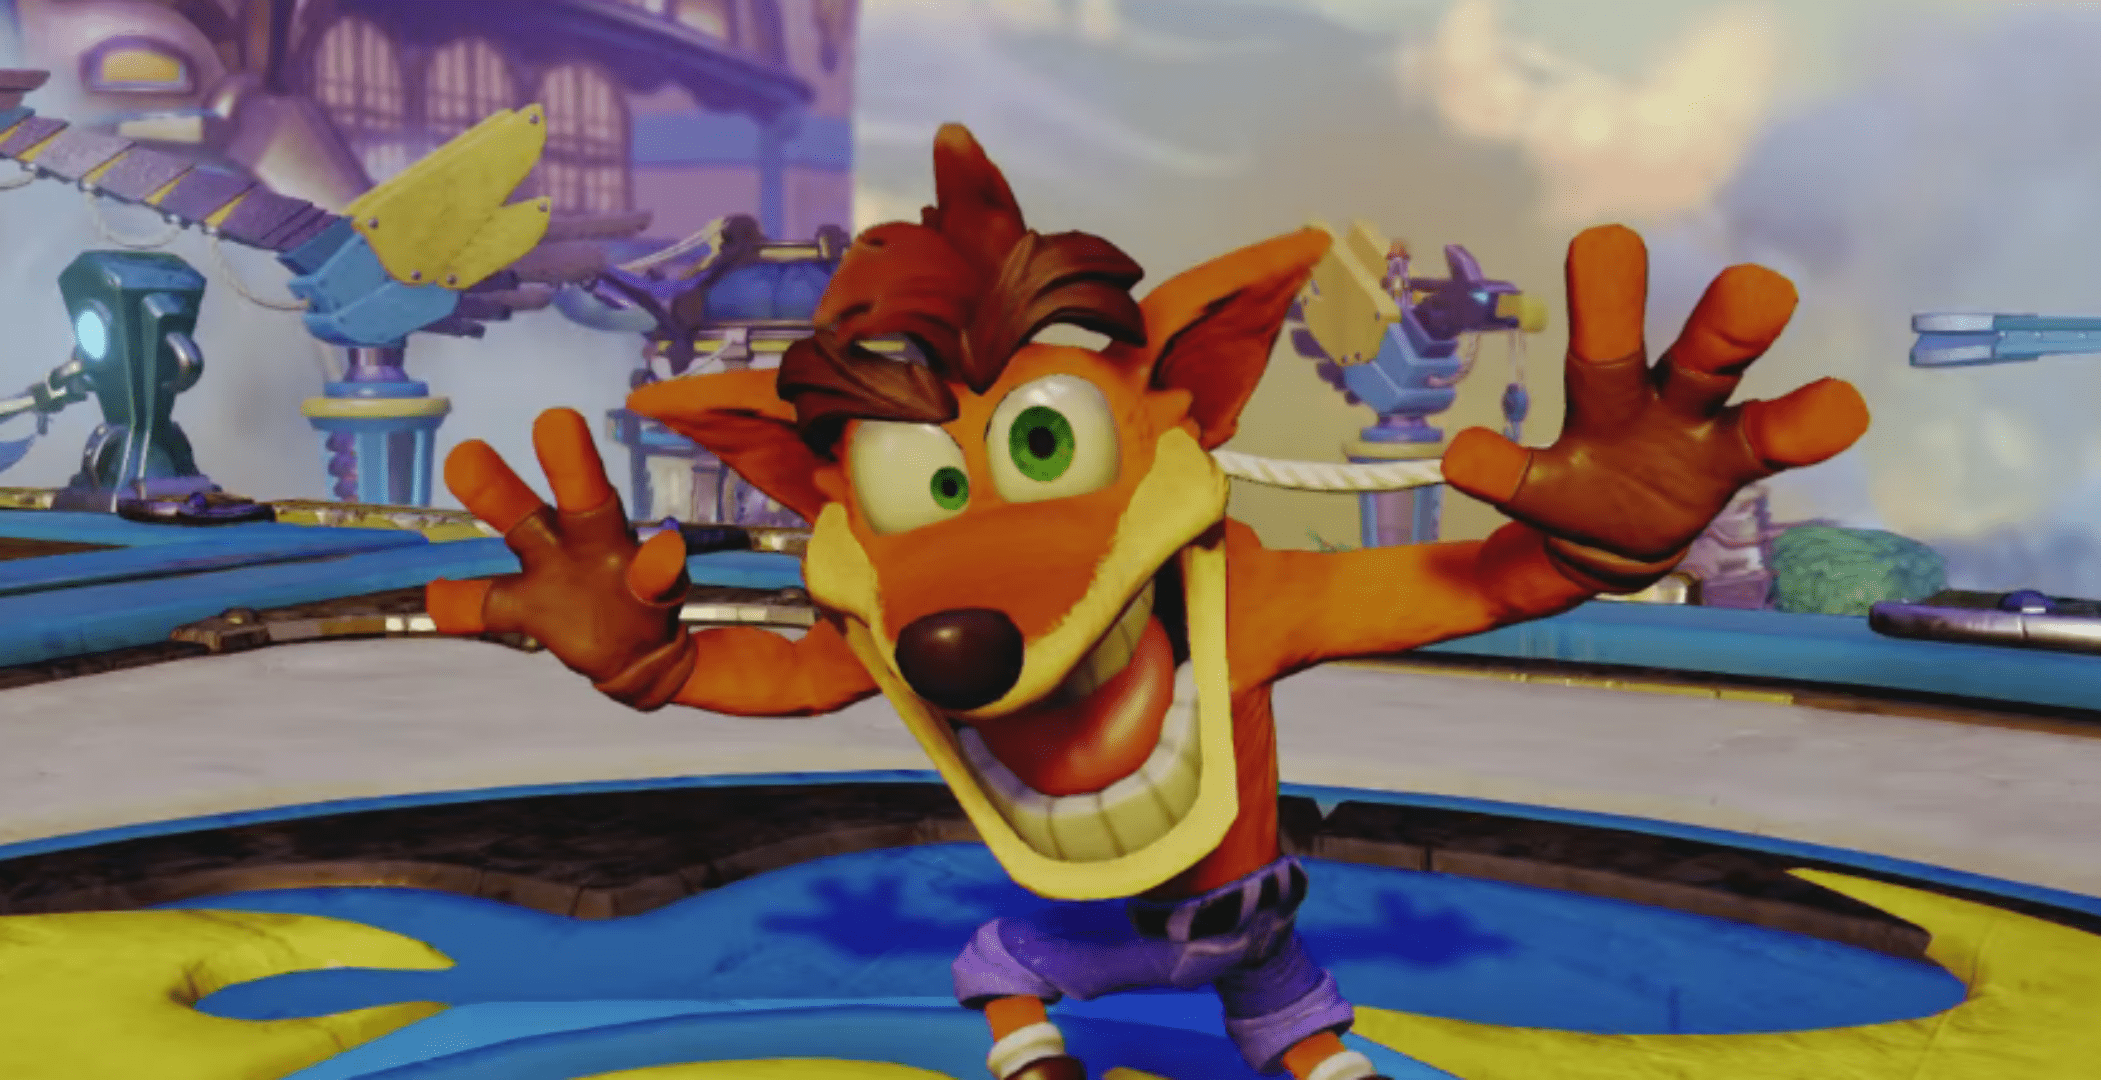 Crash Bandicoot Remake Coming to PS4